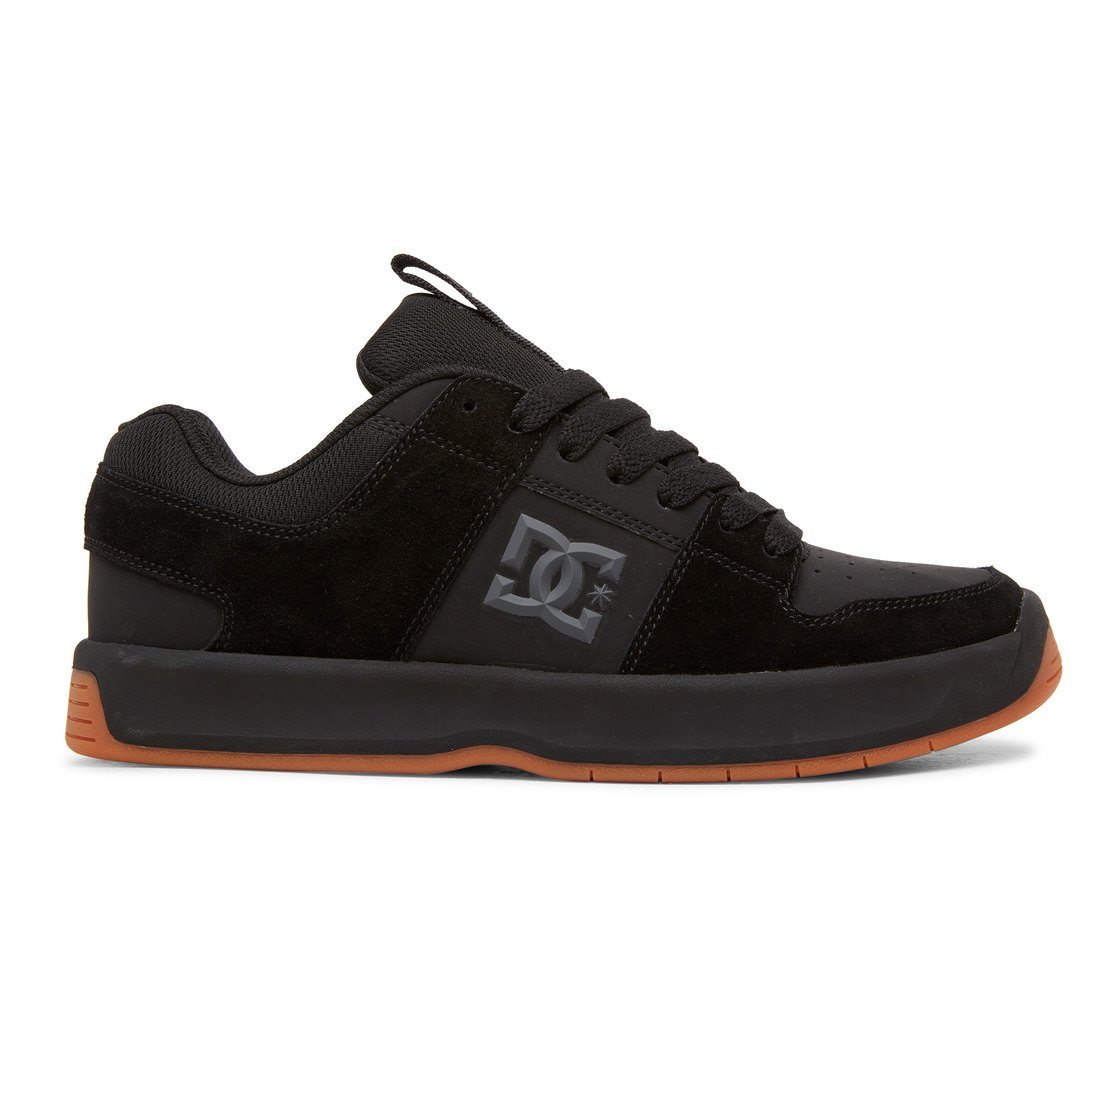 DC Lynx Zero Shoes Black/Gum FOOTWEAR - Men's Skate Shoes DC 